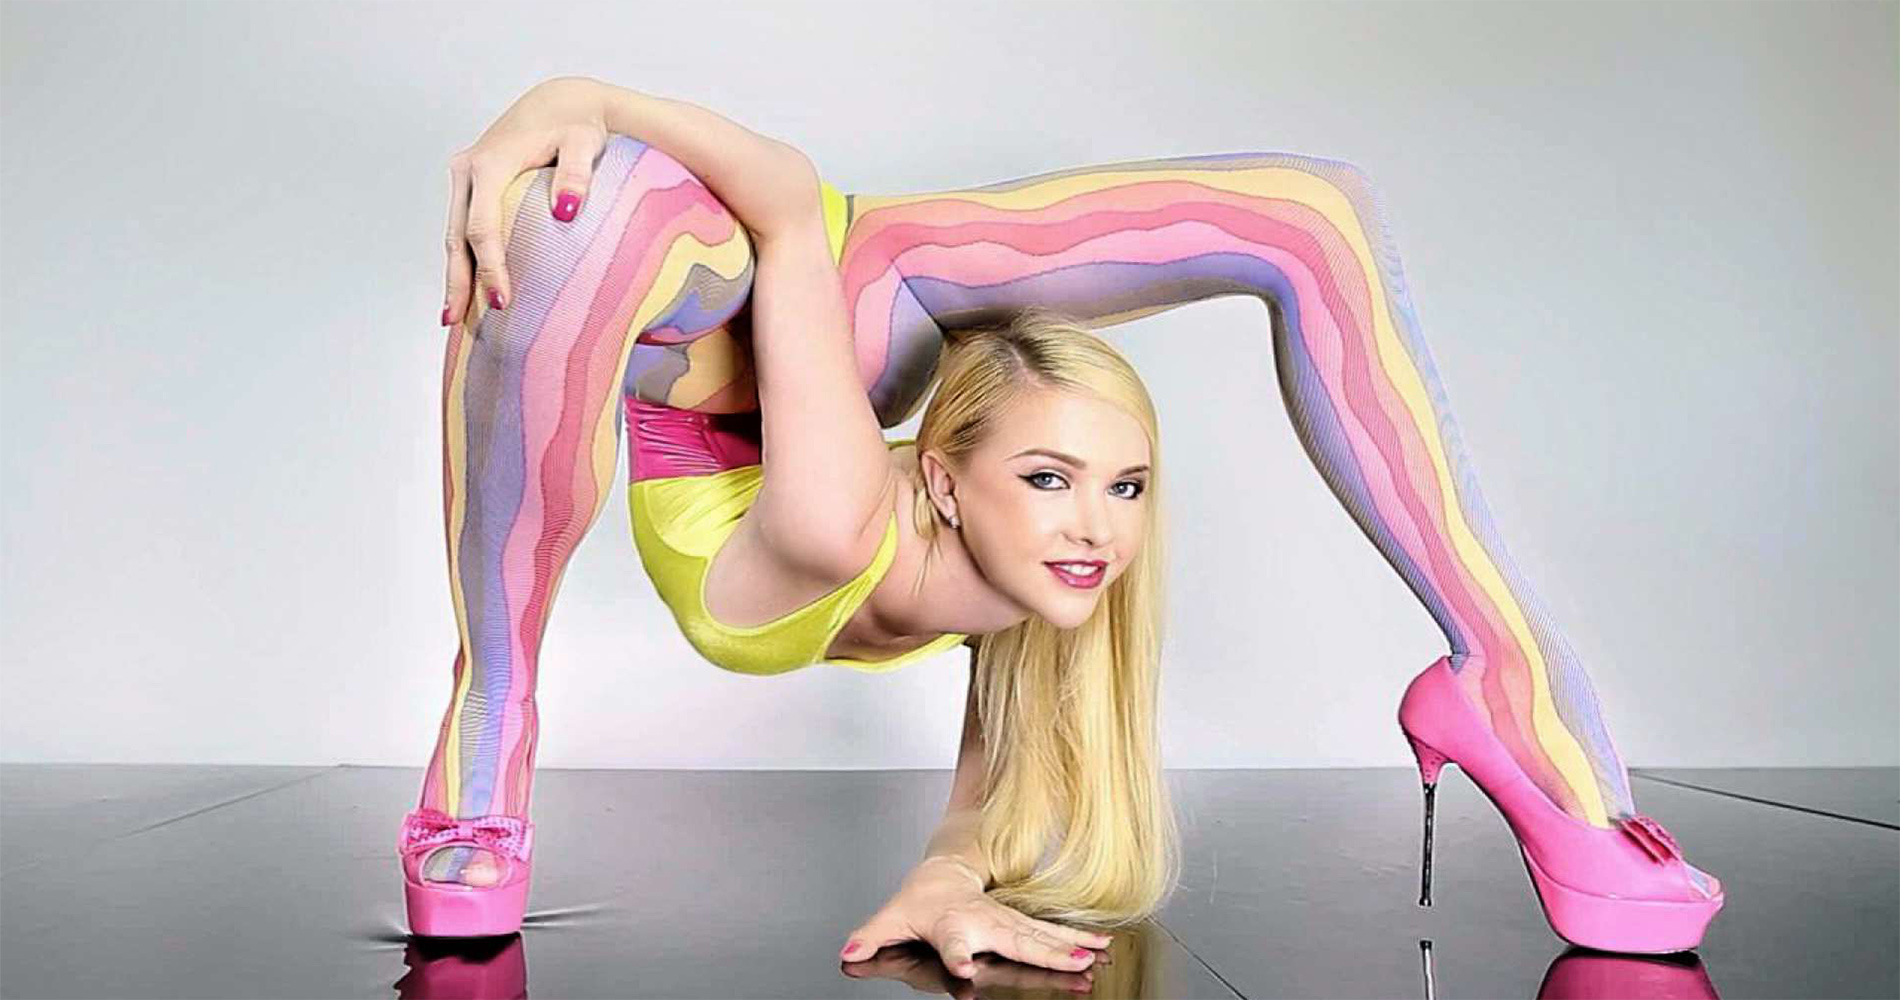 Super flexible